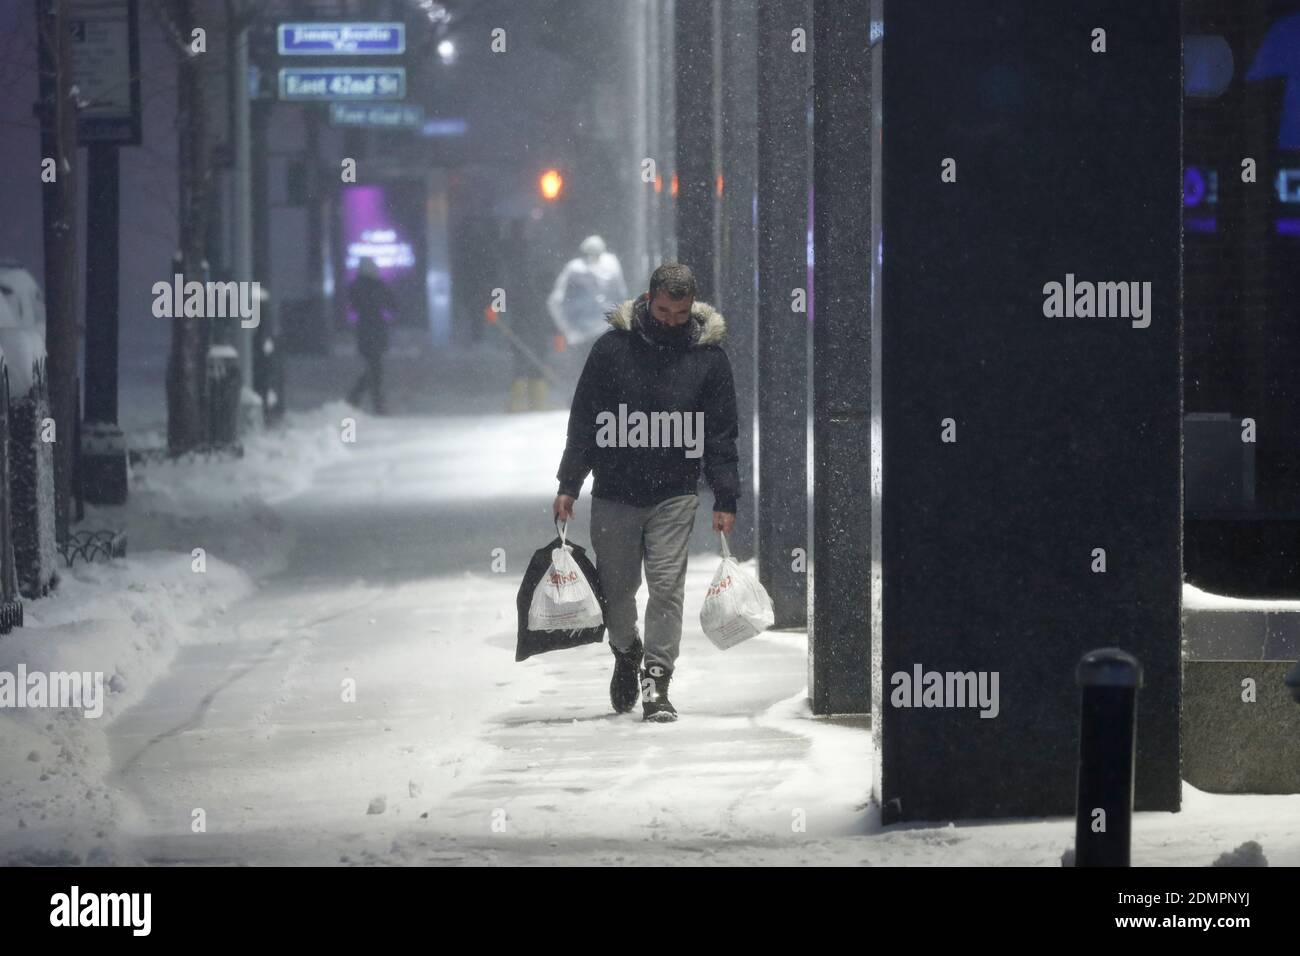 Un homme transporte des articles d'épicerie dans une rue enneigée alors que la tempête de neige majeure de 2020 amène plus de 7 pouces de neige en quelques heures. Alors que le Nor’easter descend sur New York, les températures oscillent autour de 30 degrés, et des rafales de vent allant jusqu’à 30 km/h balaient la ville. Banque D'Images